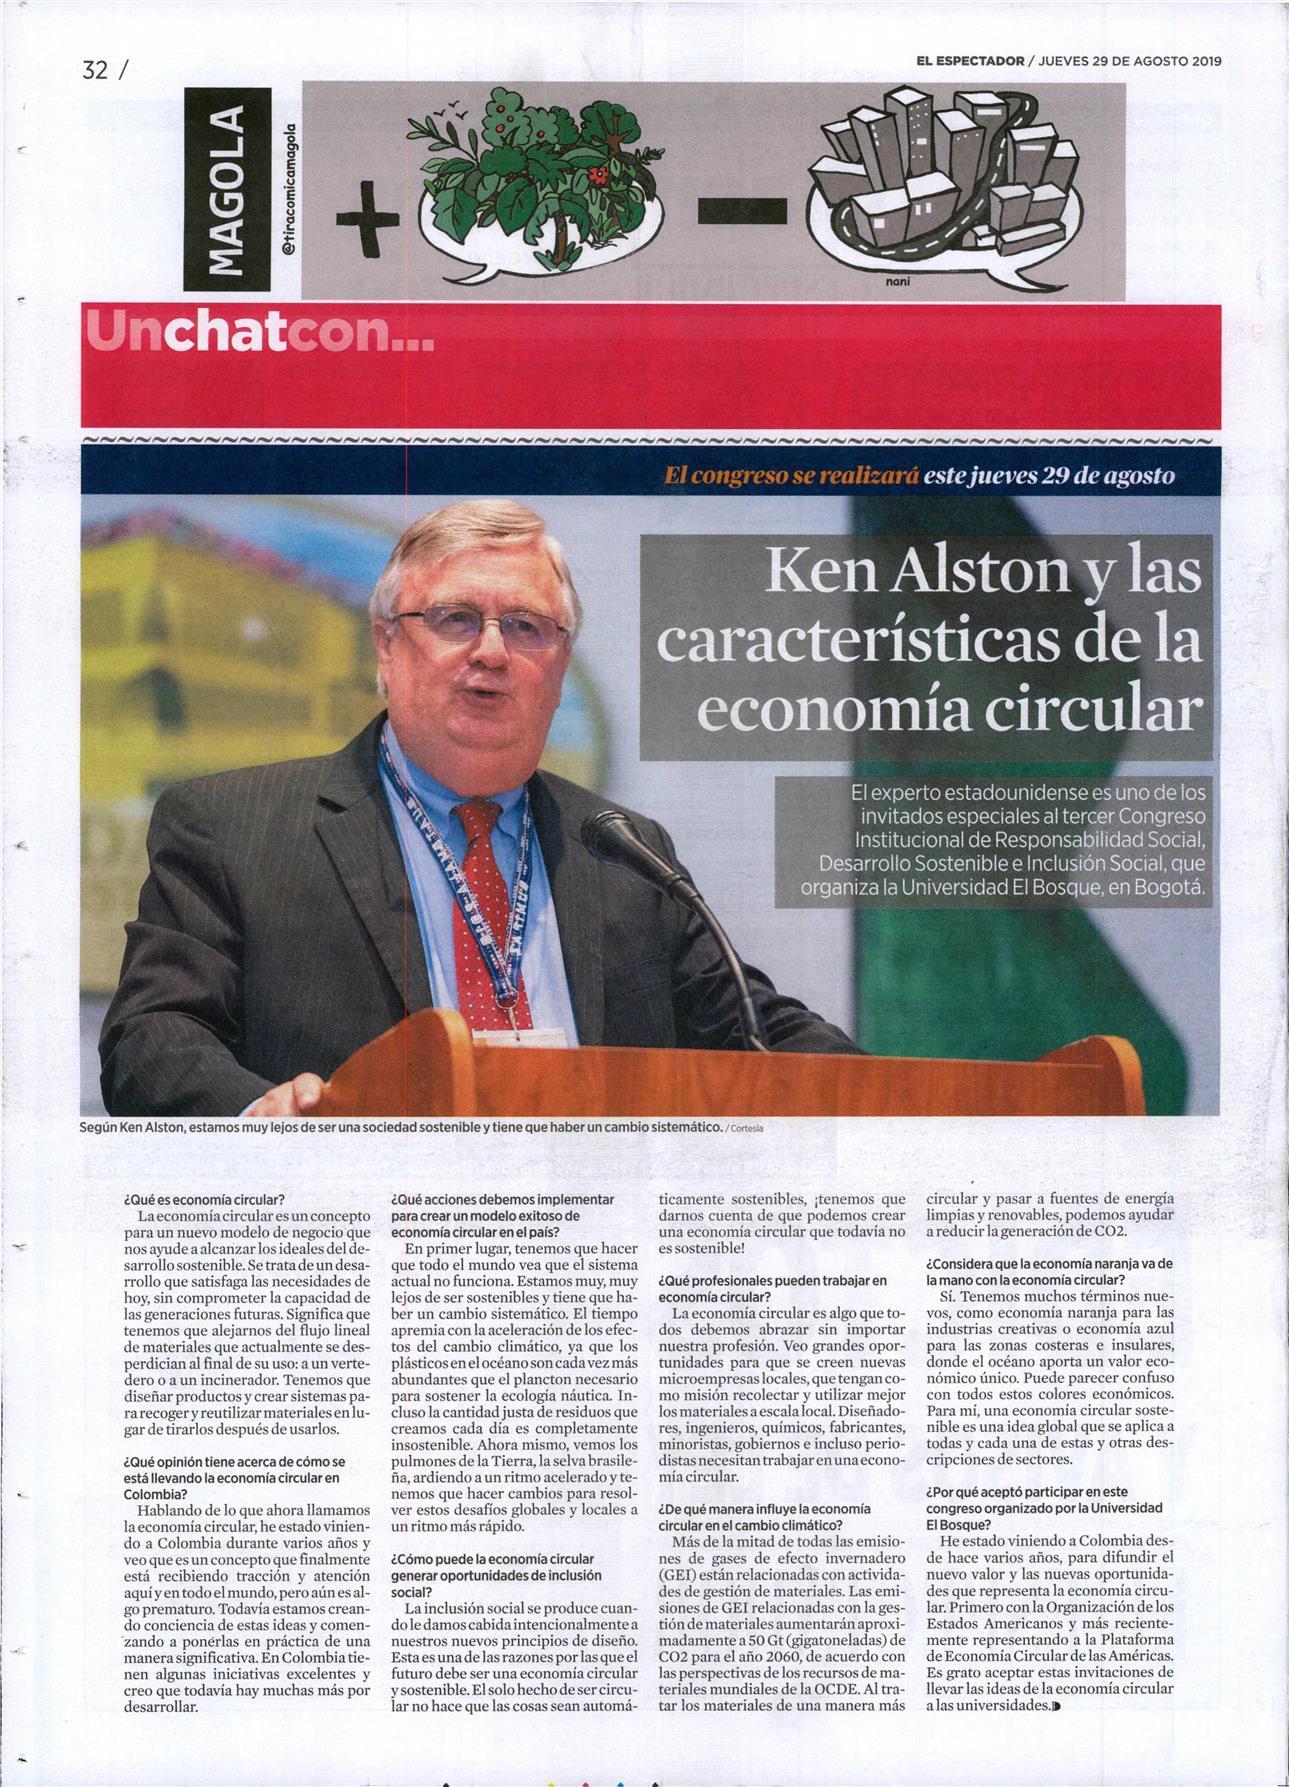 Ken Alston y las características de la economía circular - Universidad El Bosque